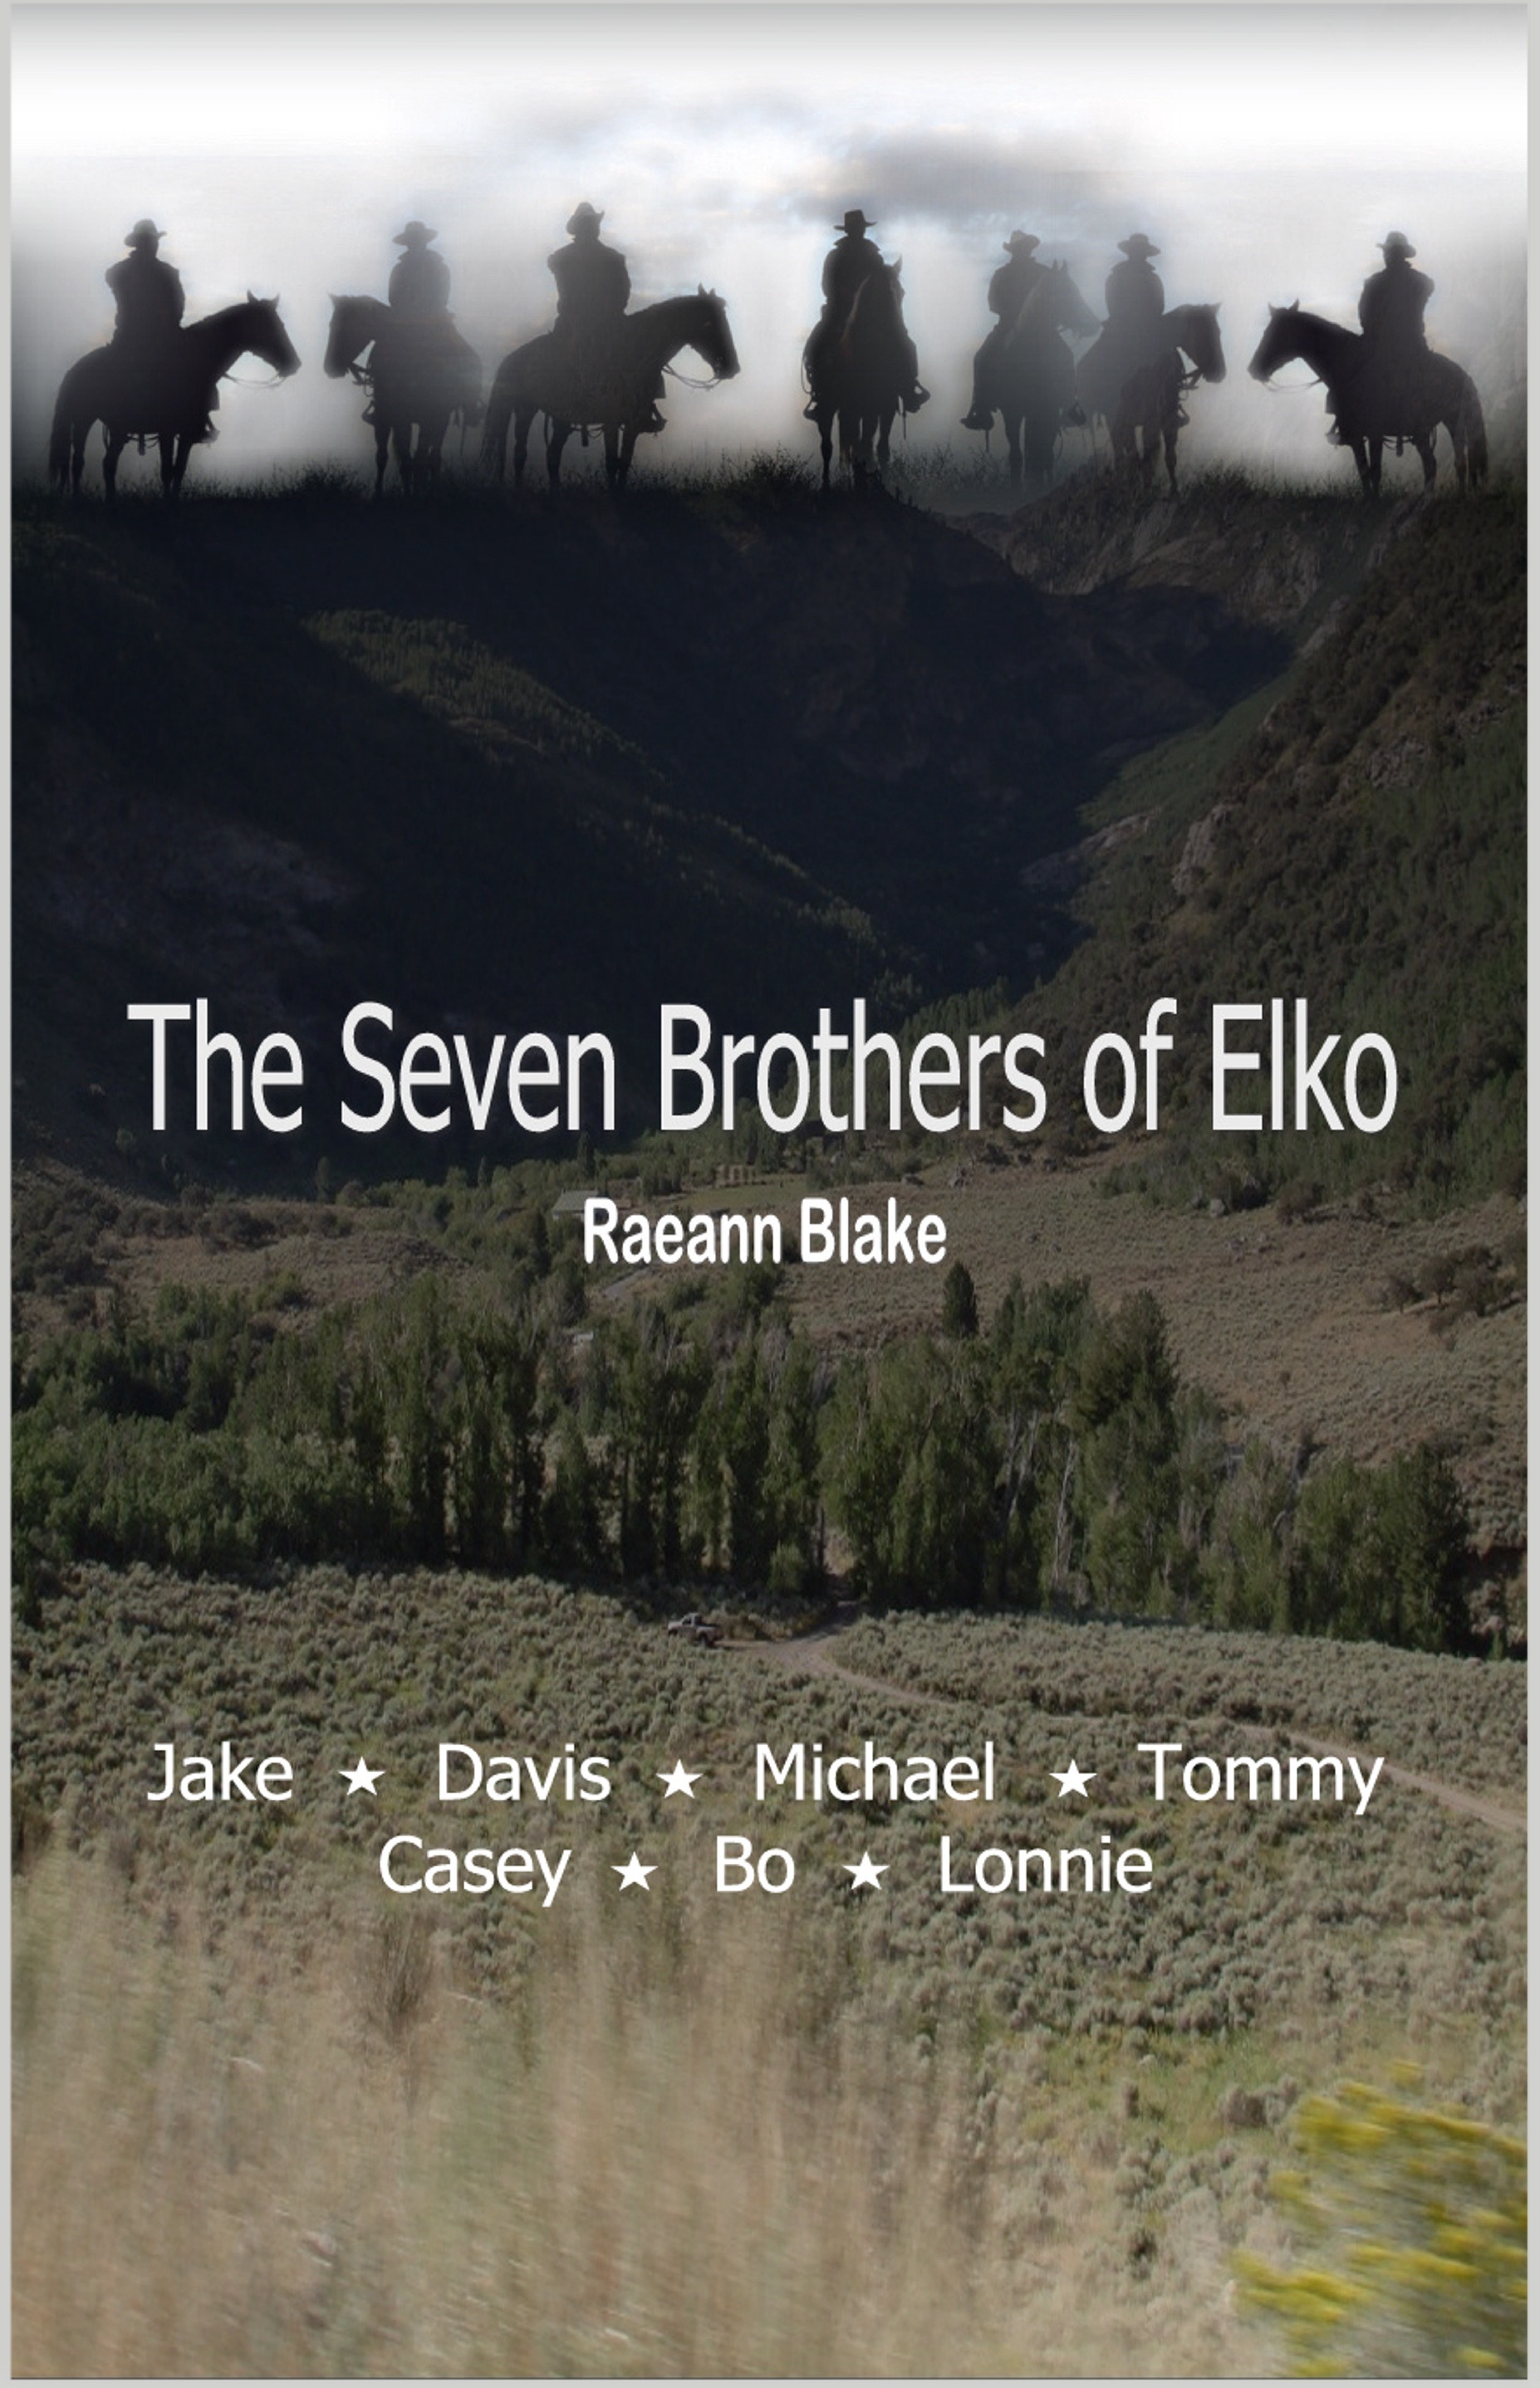 Meet The Seven Brothers of Elko